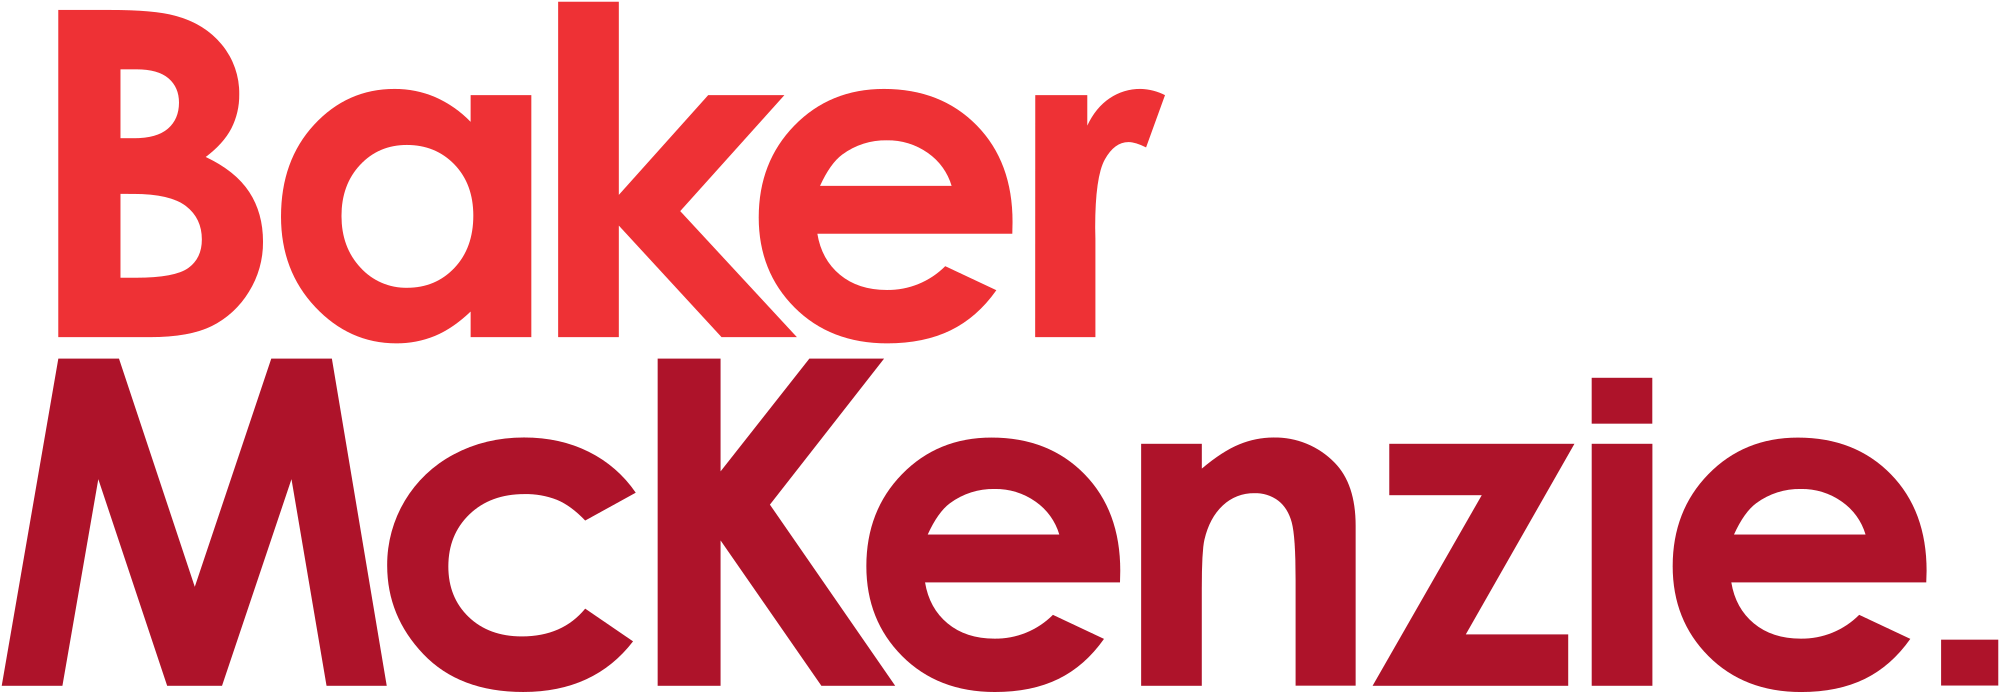 Baker McKenzie Logo - File:Baker McKenzie logo (2016).svg - Wikimedia Commons